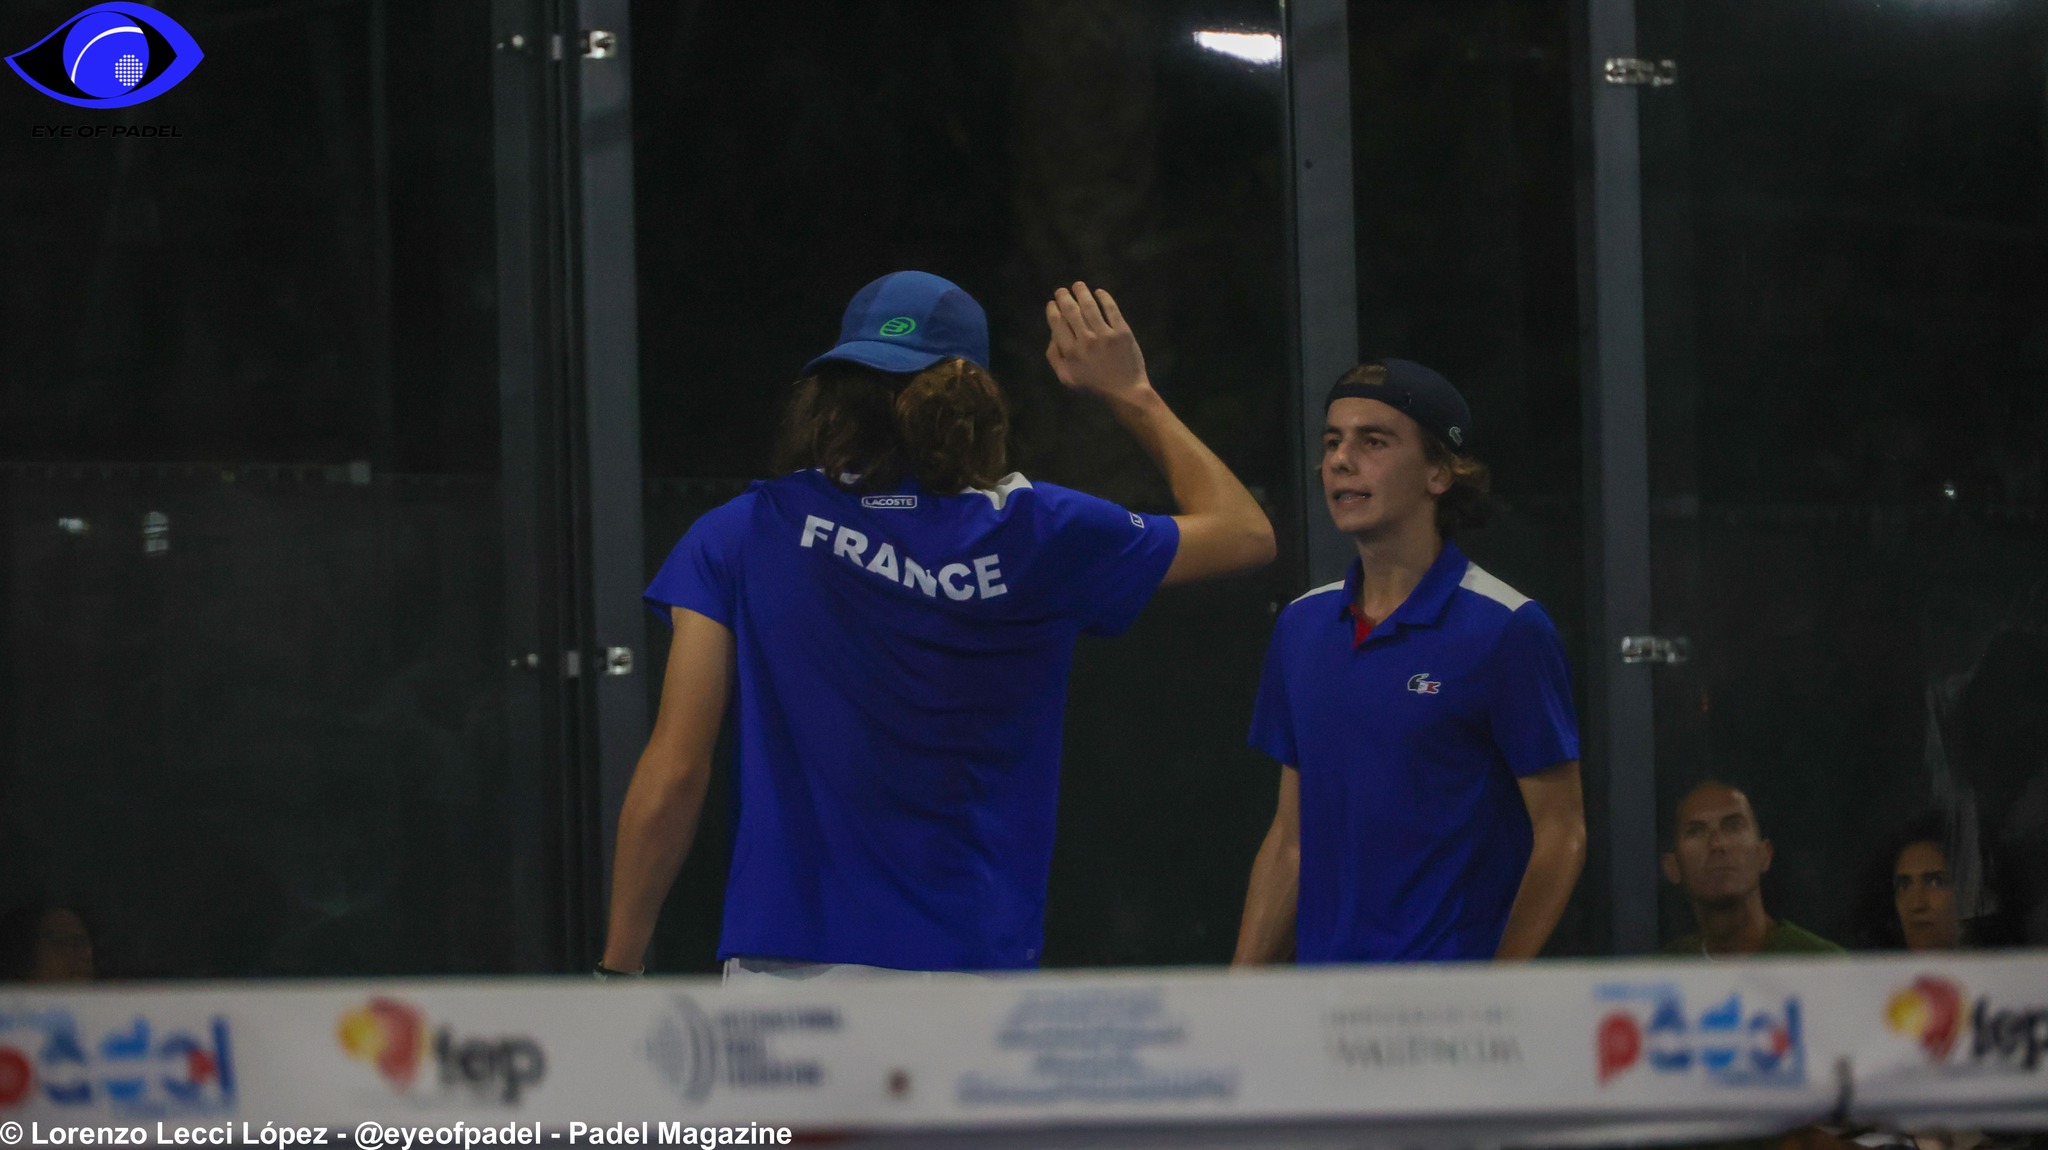 LIVE Europese Kampioenschappen Junioren: Frankrijk vs Nederland (M)